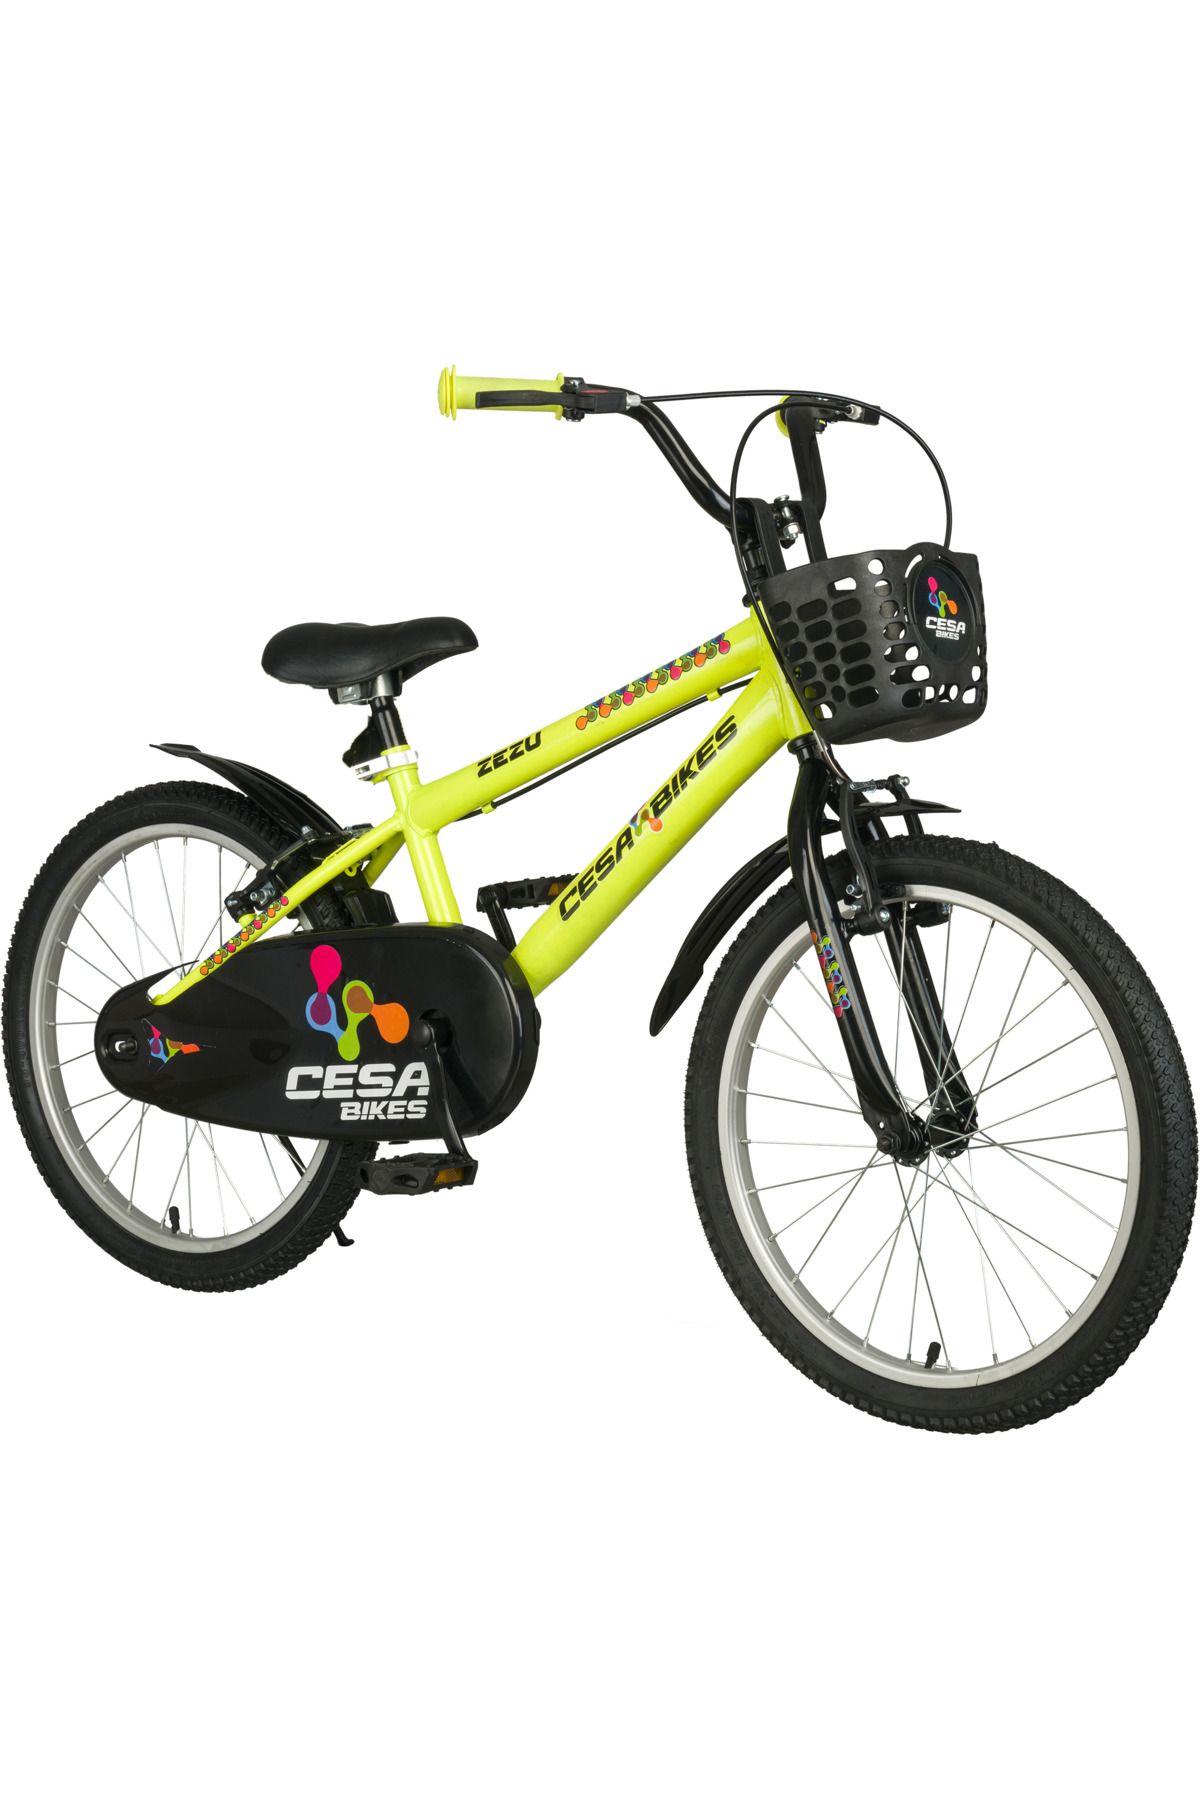 Cesa Bisiklet Cesa Bike Zezu 20 Jant Bisiklet 6-10 Yaş Çocuk Bisikleti Neon Sarı